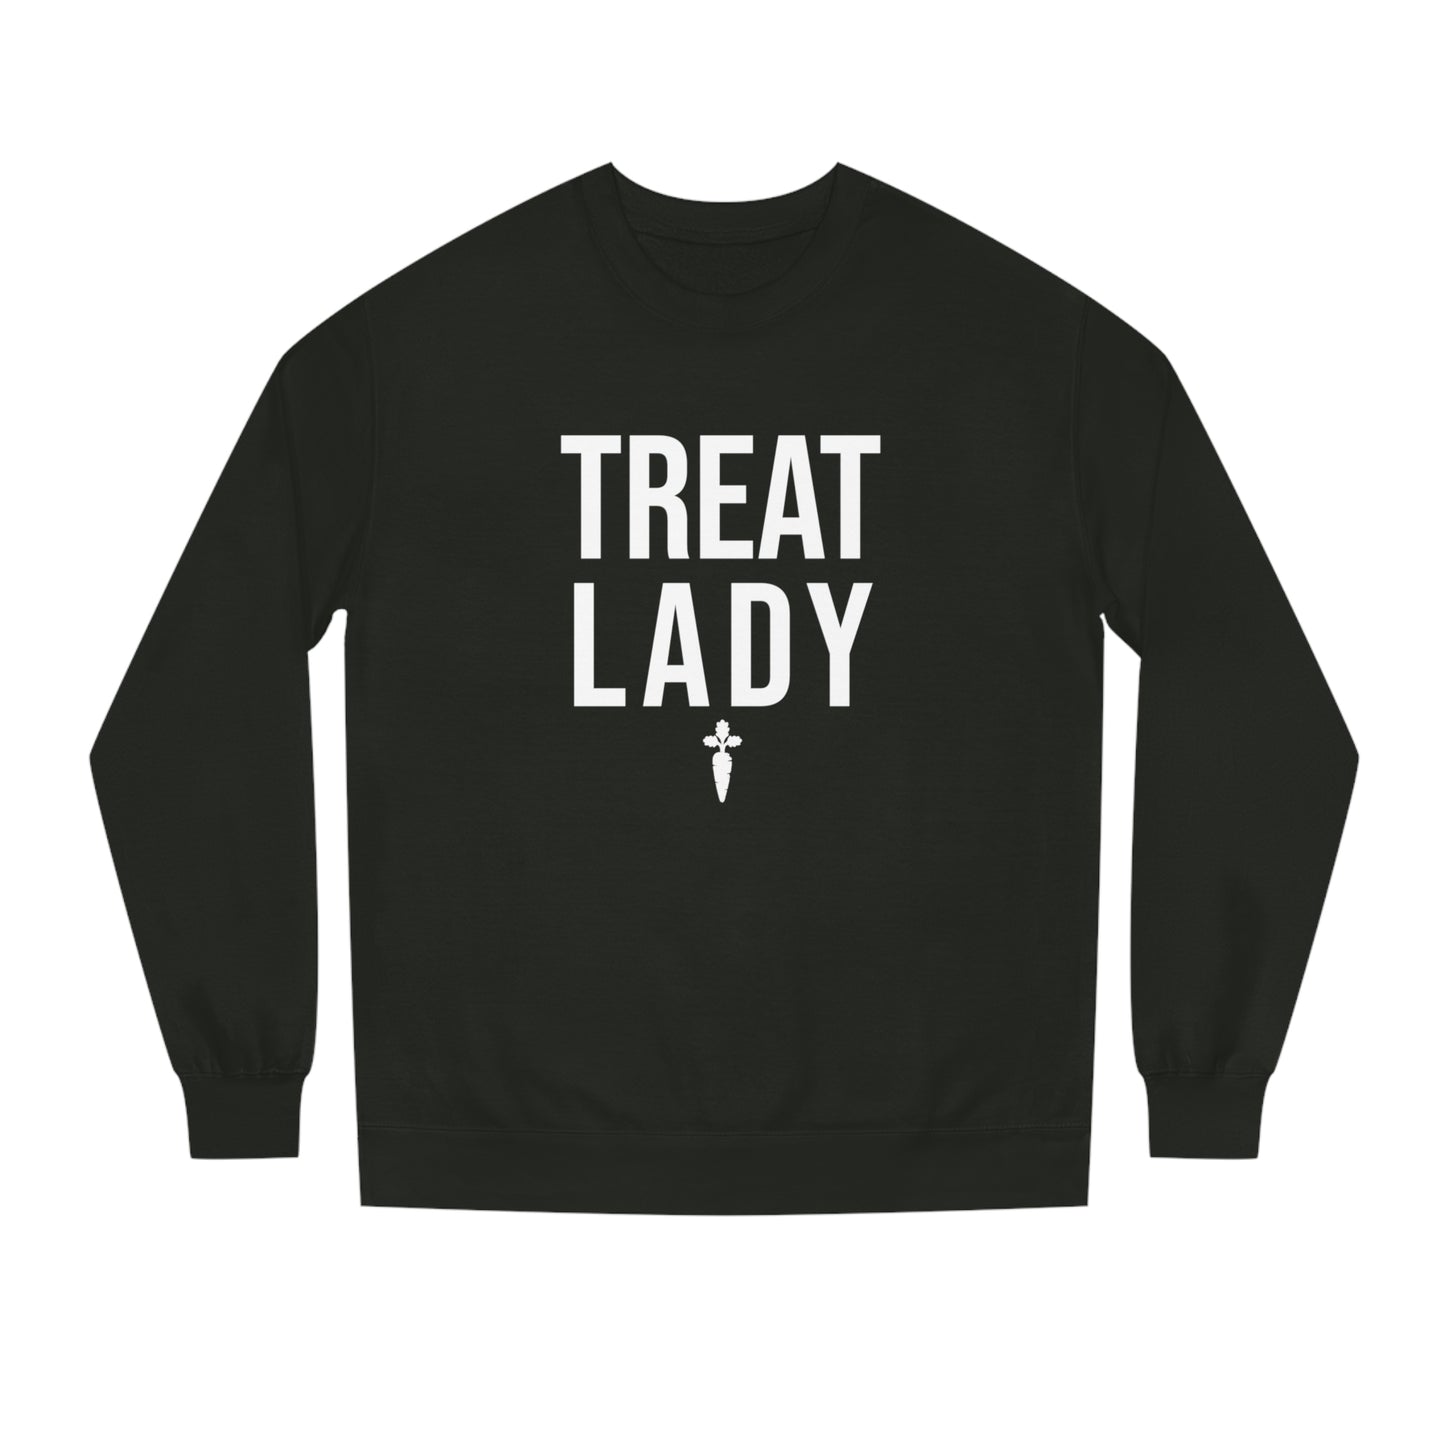 Copy of Treat Lady Crew Neck Sweatshirt